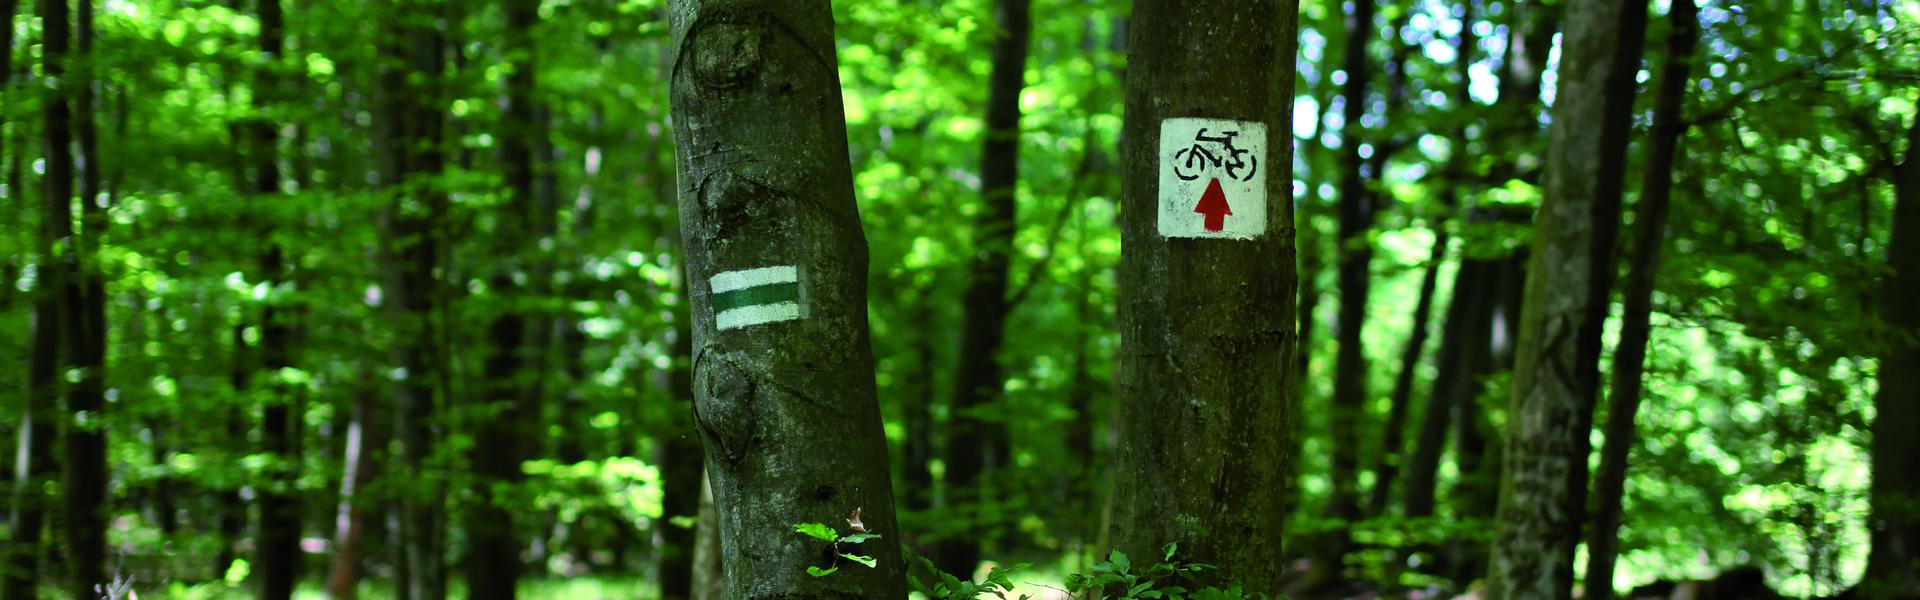 Widok na szlak w Puszczy Nieoołomickiej. Na drzewach widnieją oznaczenia szlaku.